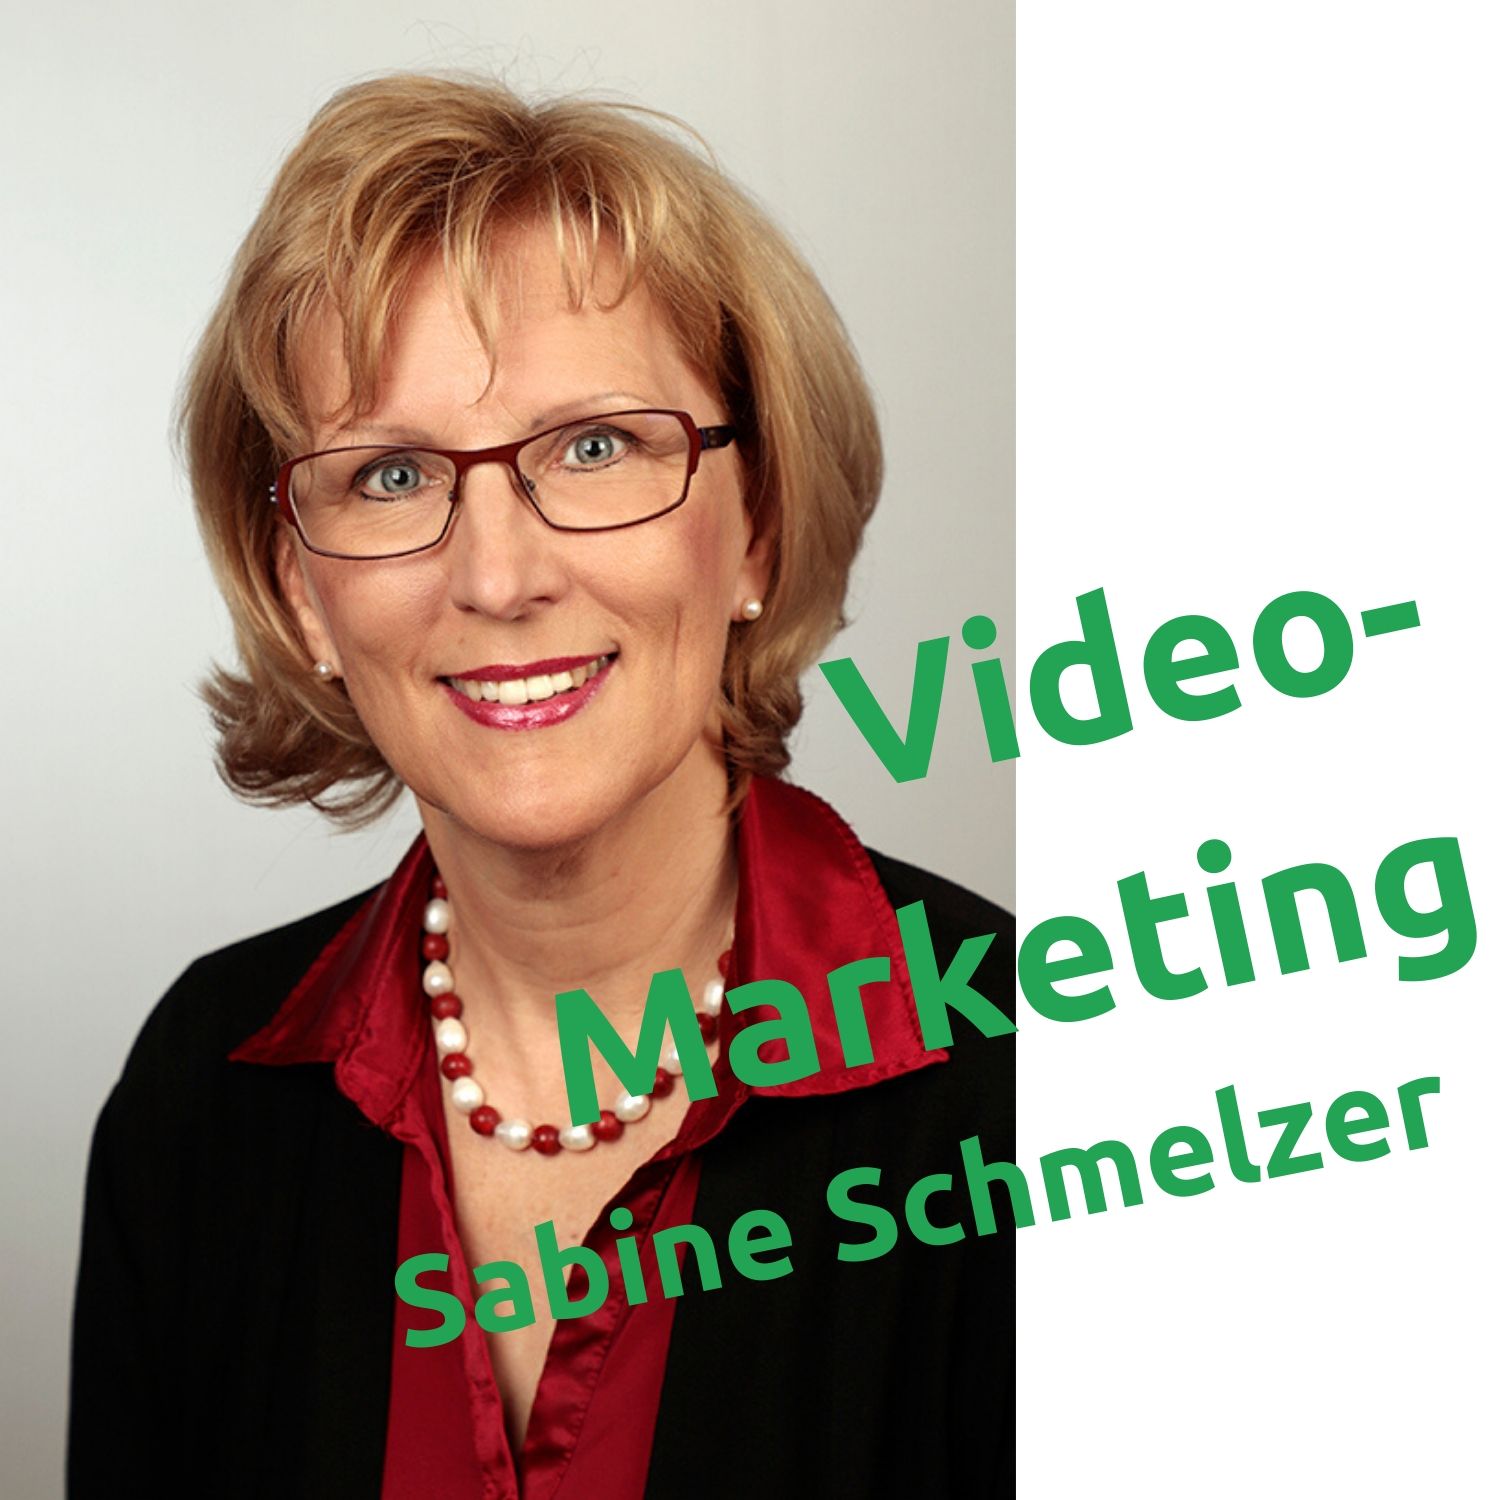 Interview mit Sabine Schmelzer - Vidoemarketing